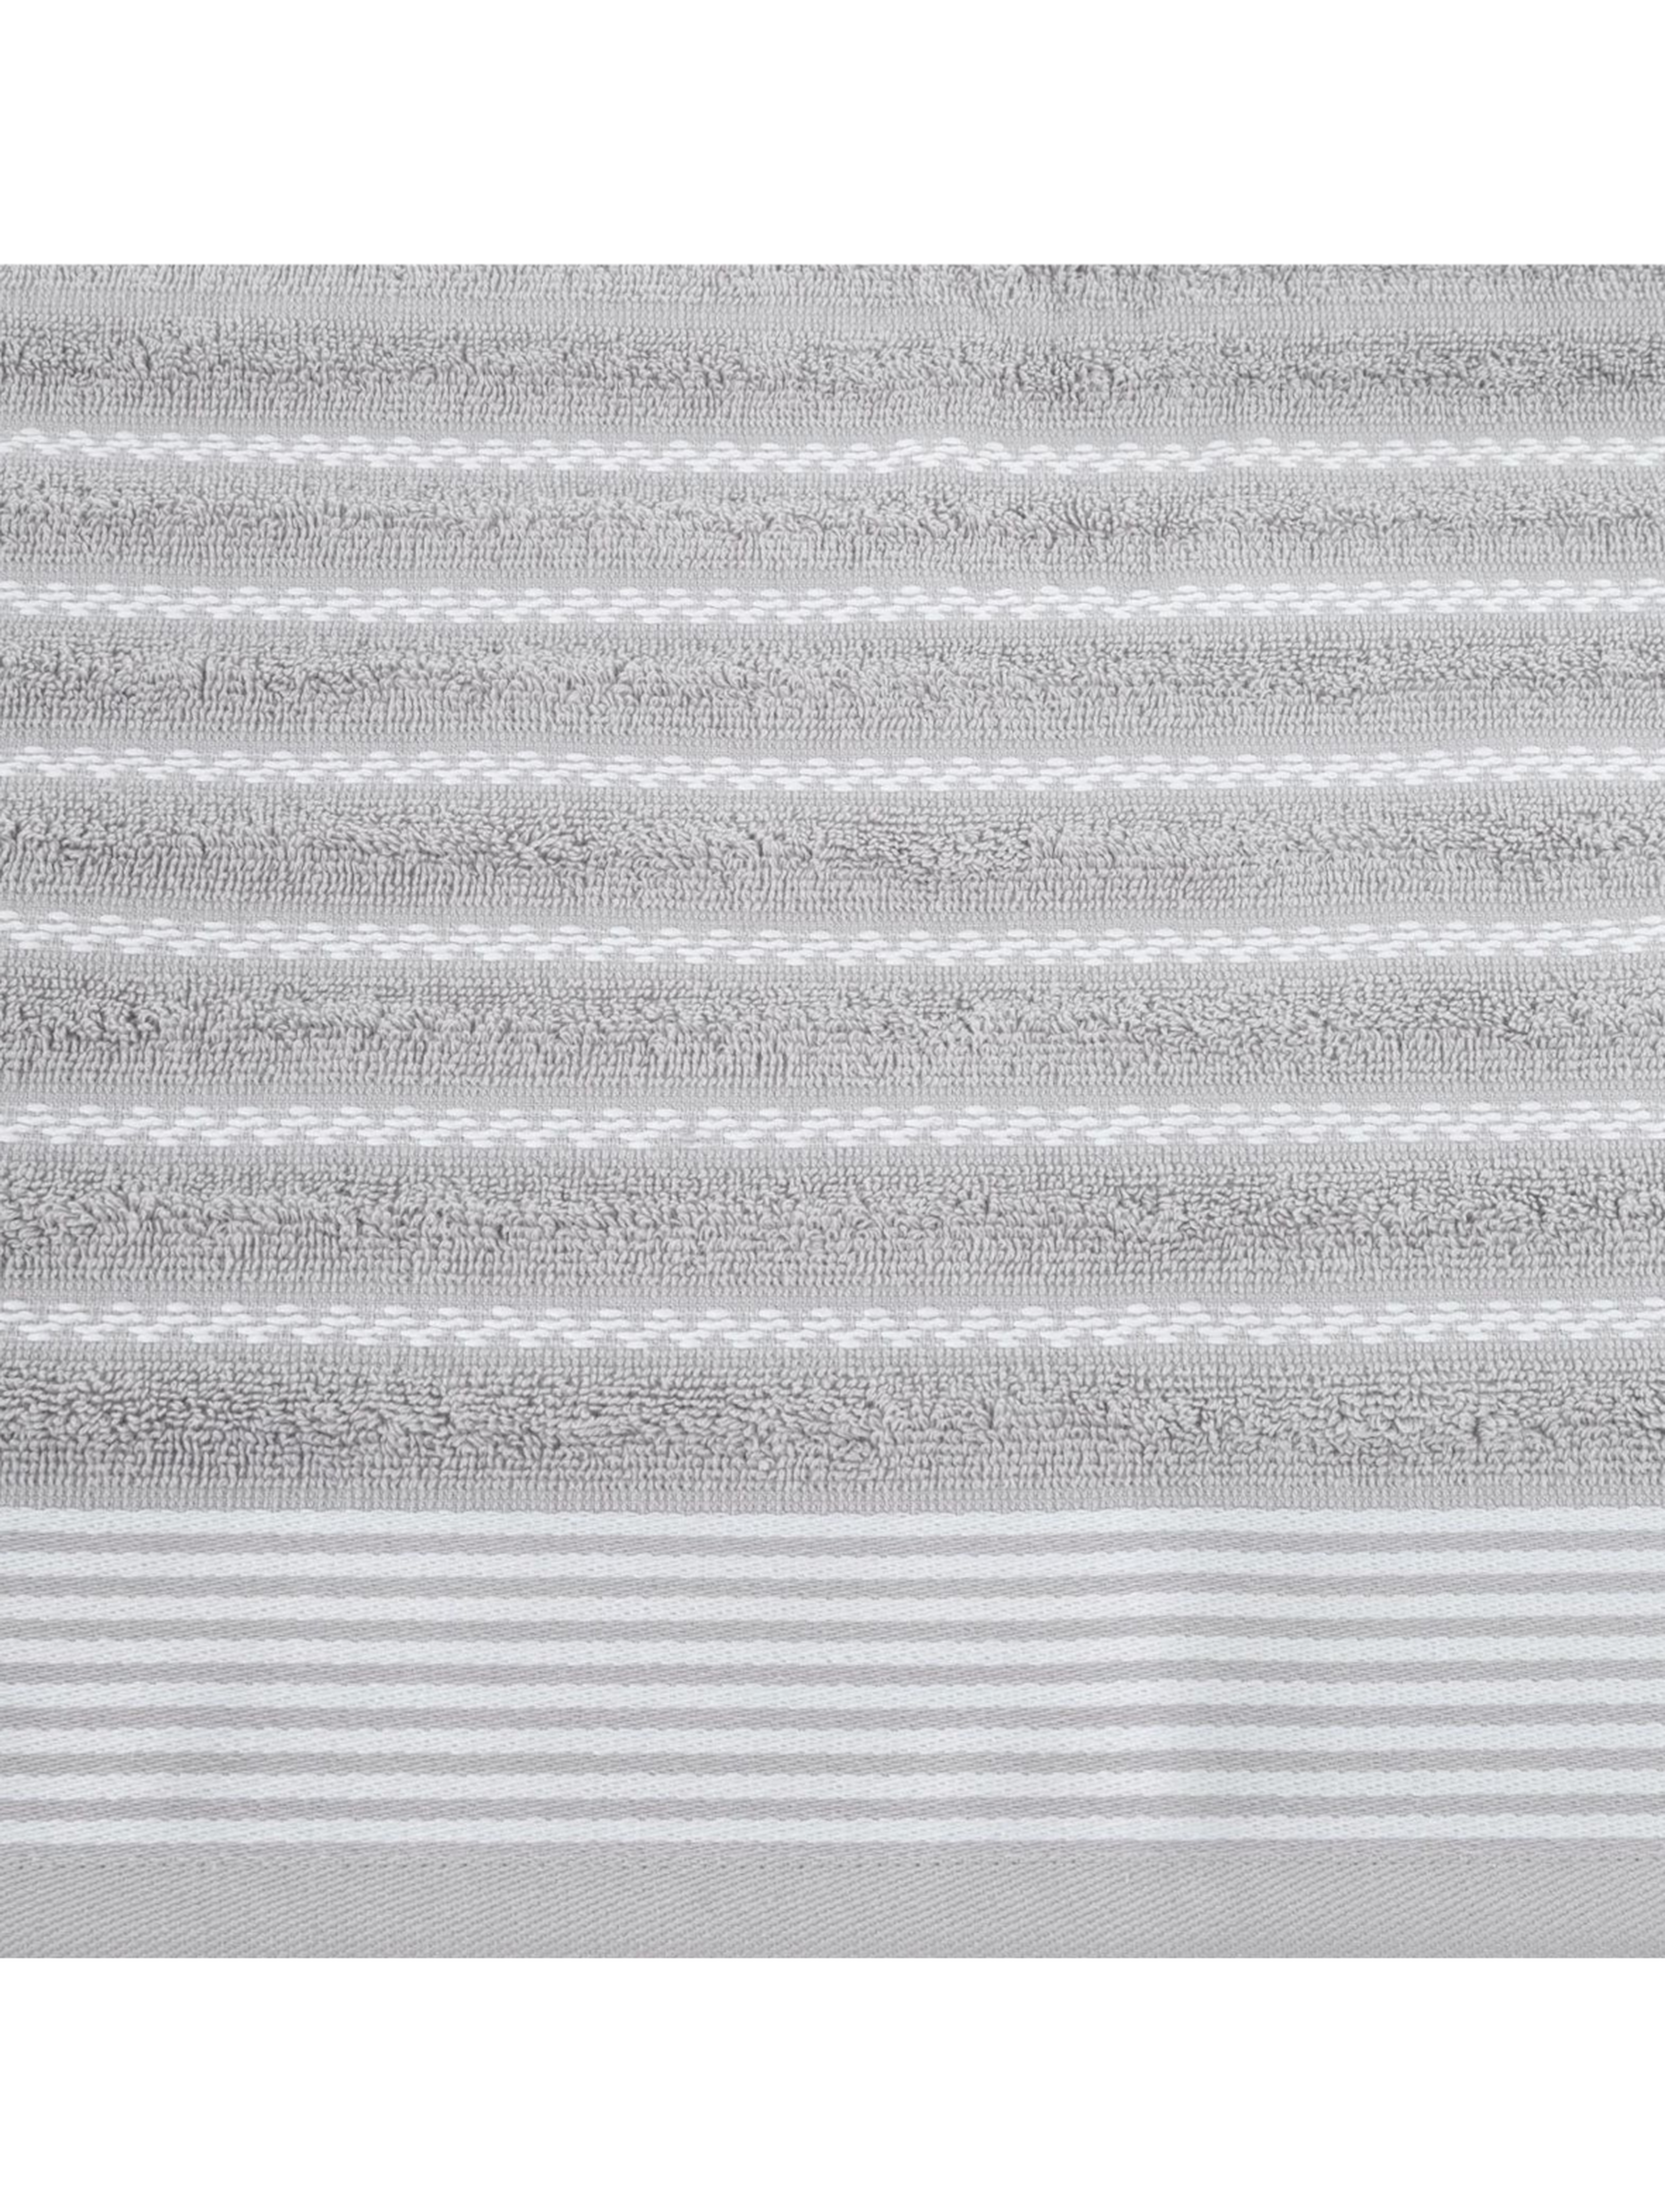 Ręcznik d91 leo (02) 70x140 cm srebrny